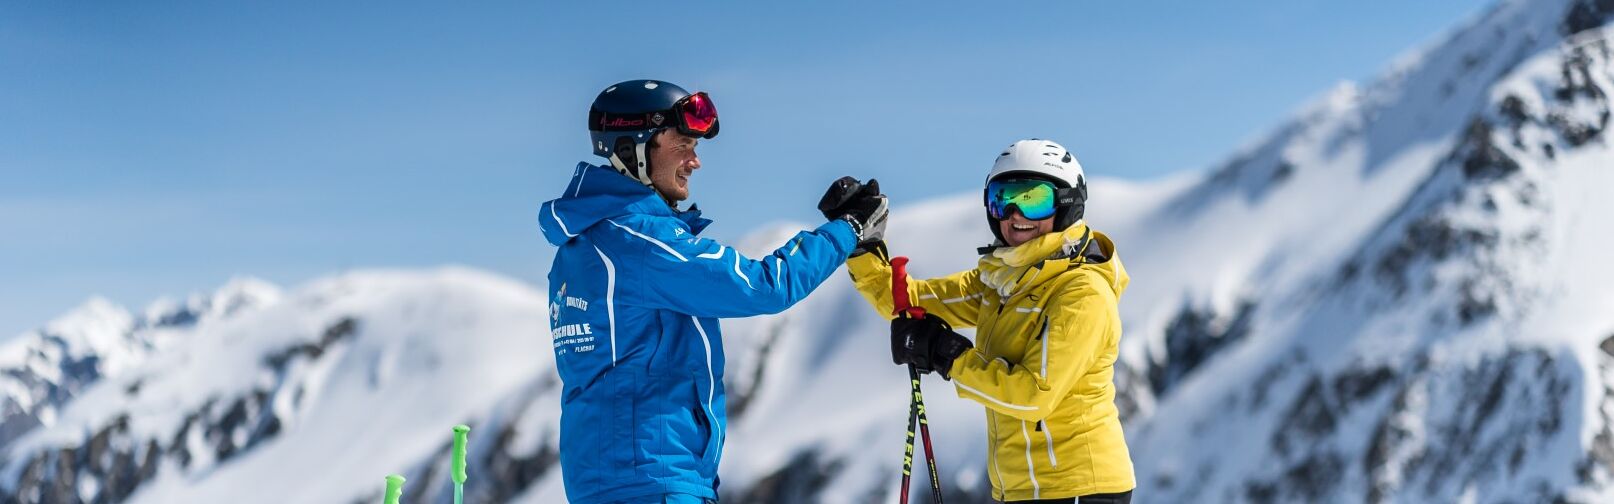 Skischule Flachau - Privatunterricht Ski für Erwachsene und Kinder - Skikurs Flachau